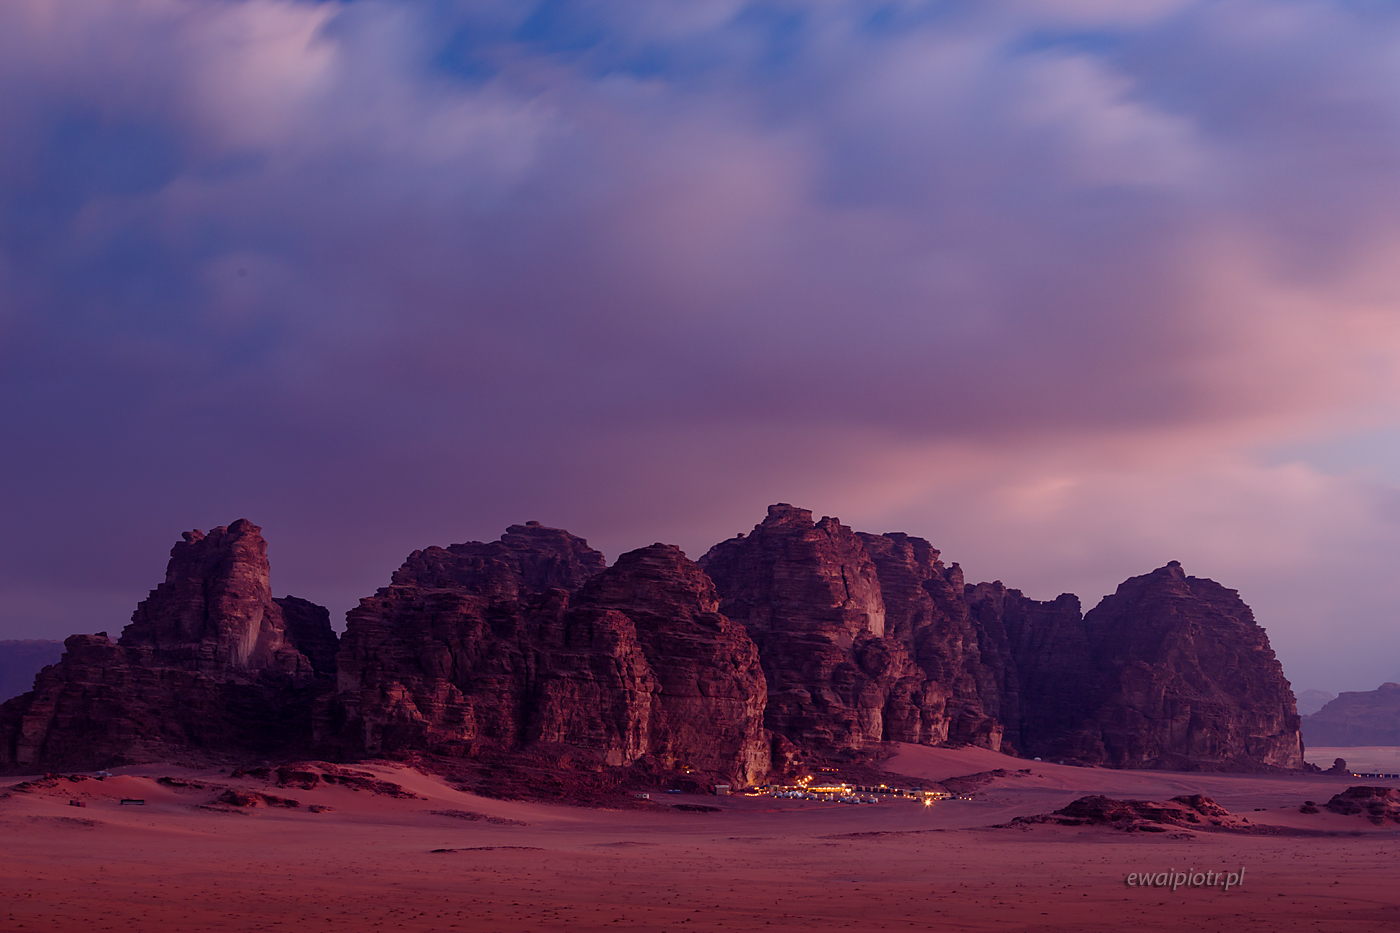 Obóz pod górą, pustynia Wadi Rum, Jordania, warsztaty fotograficzne, wschód słońca